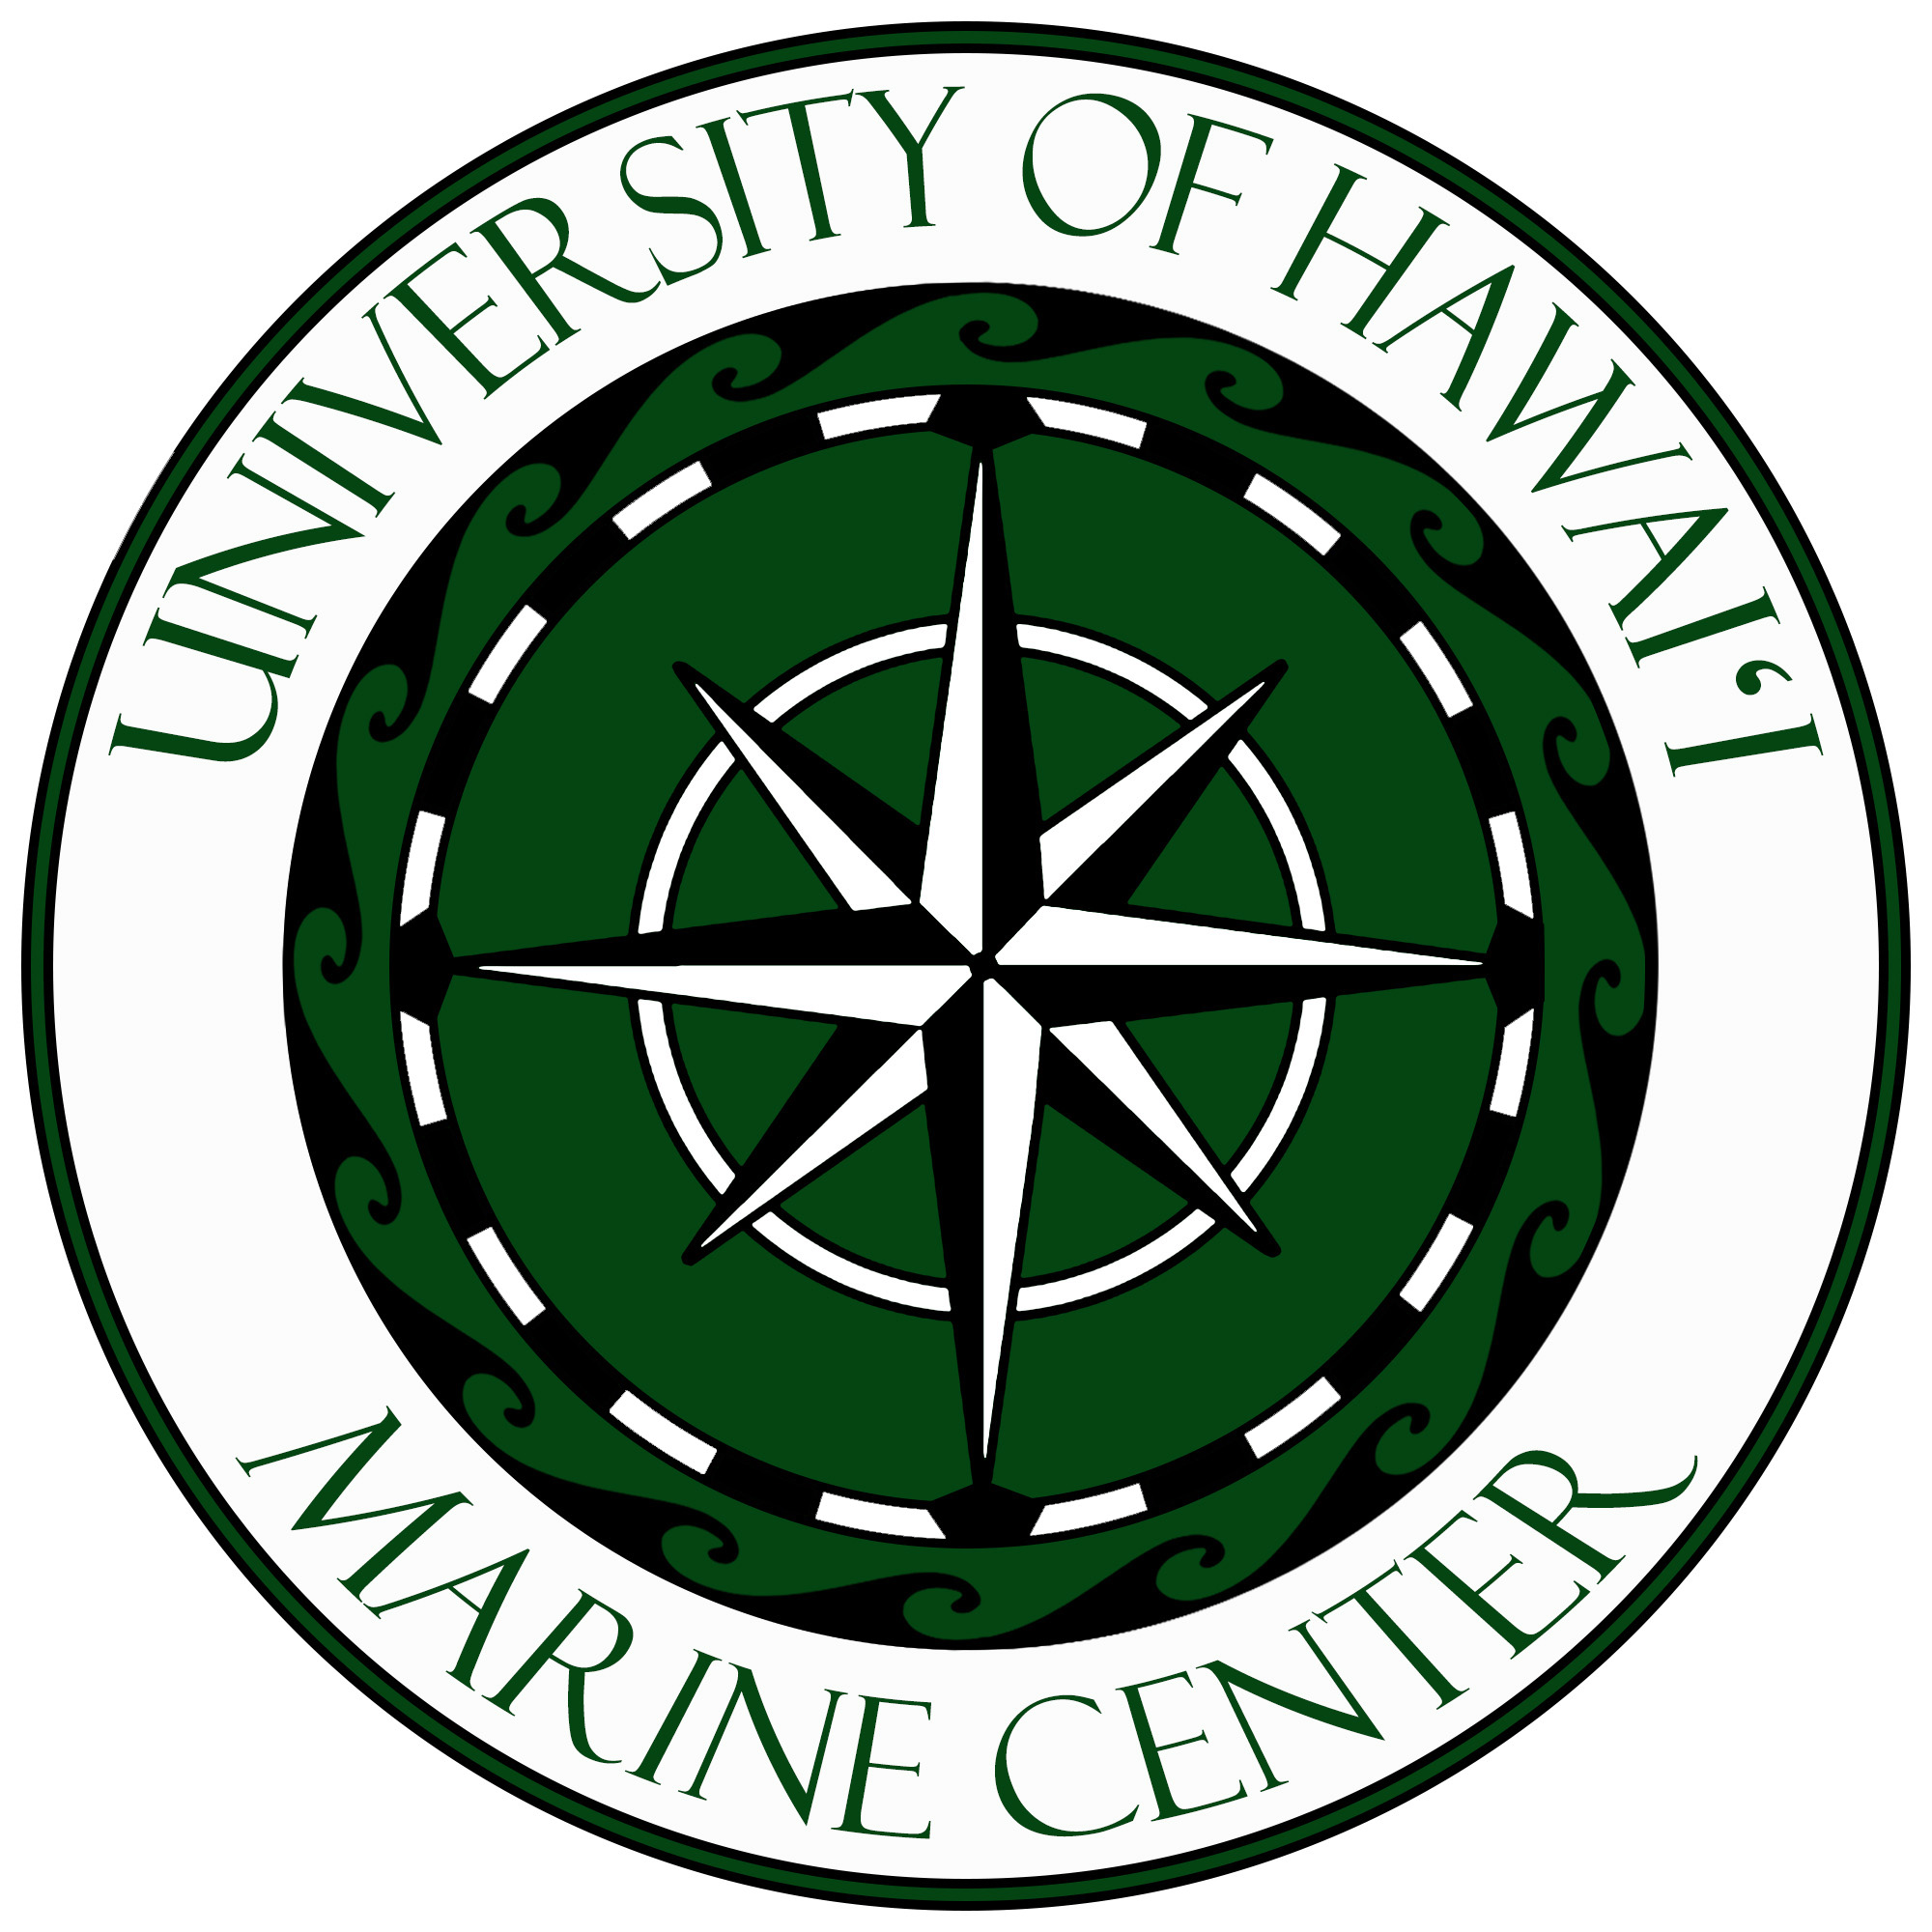 University of Hawai‘i Marine Center